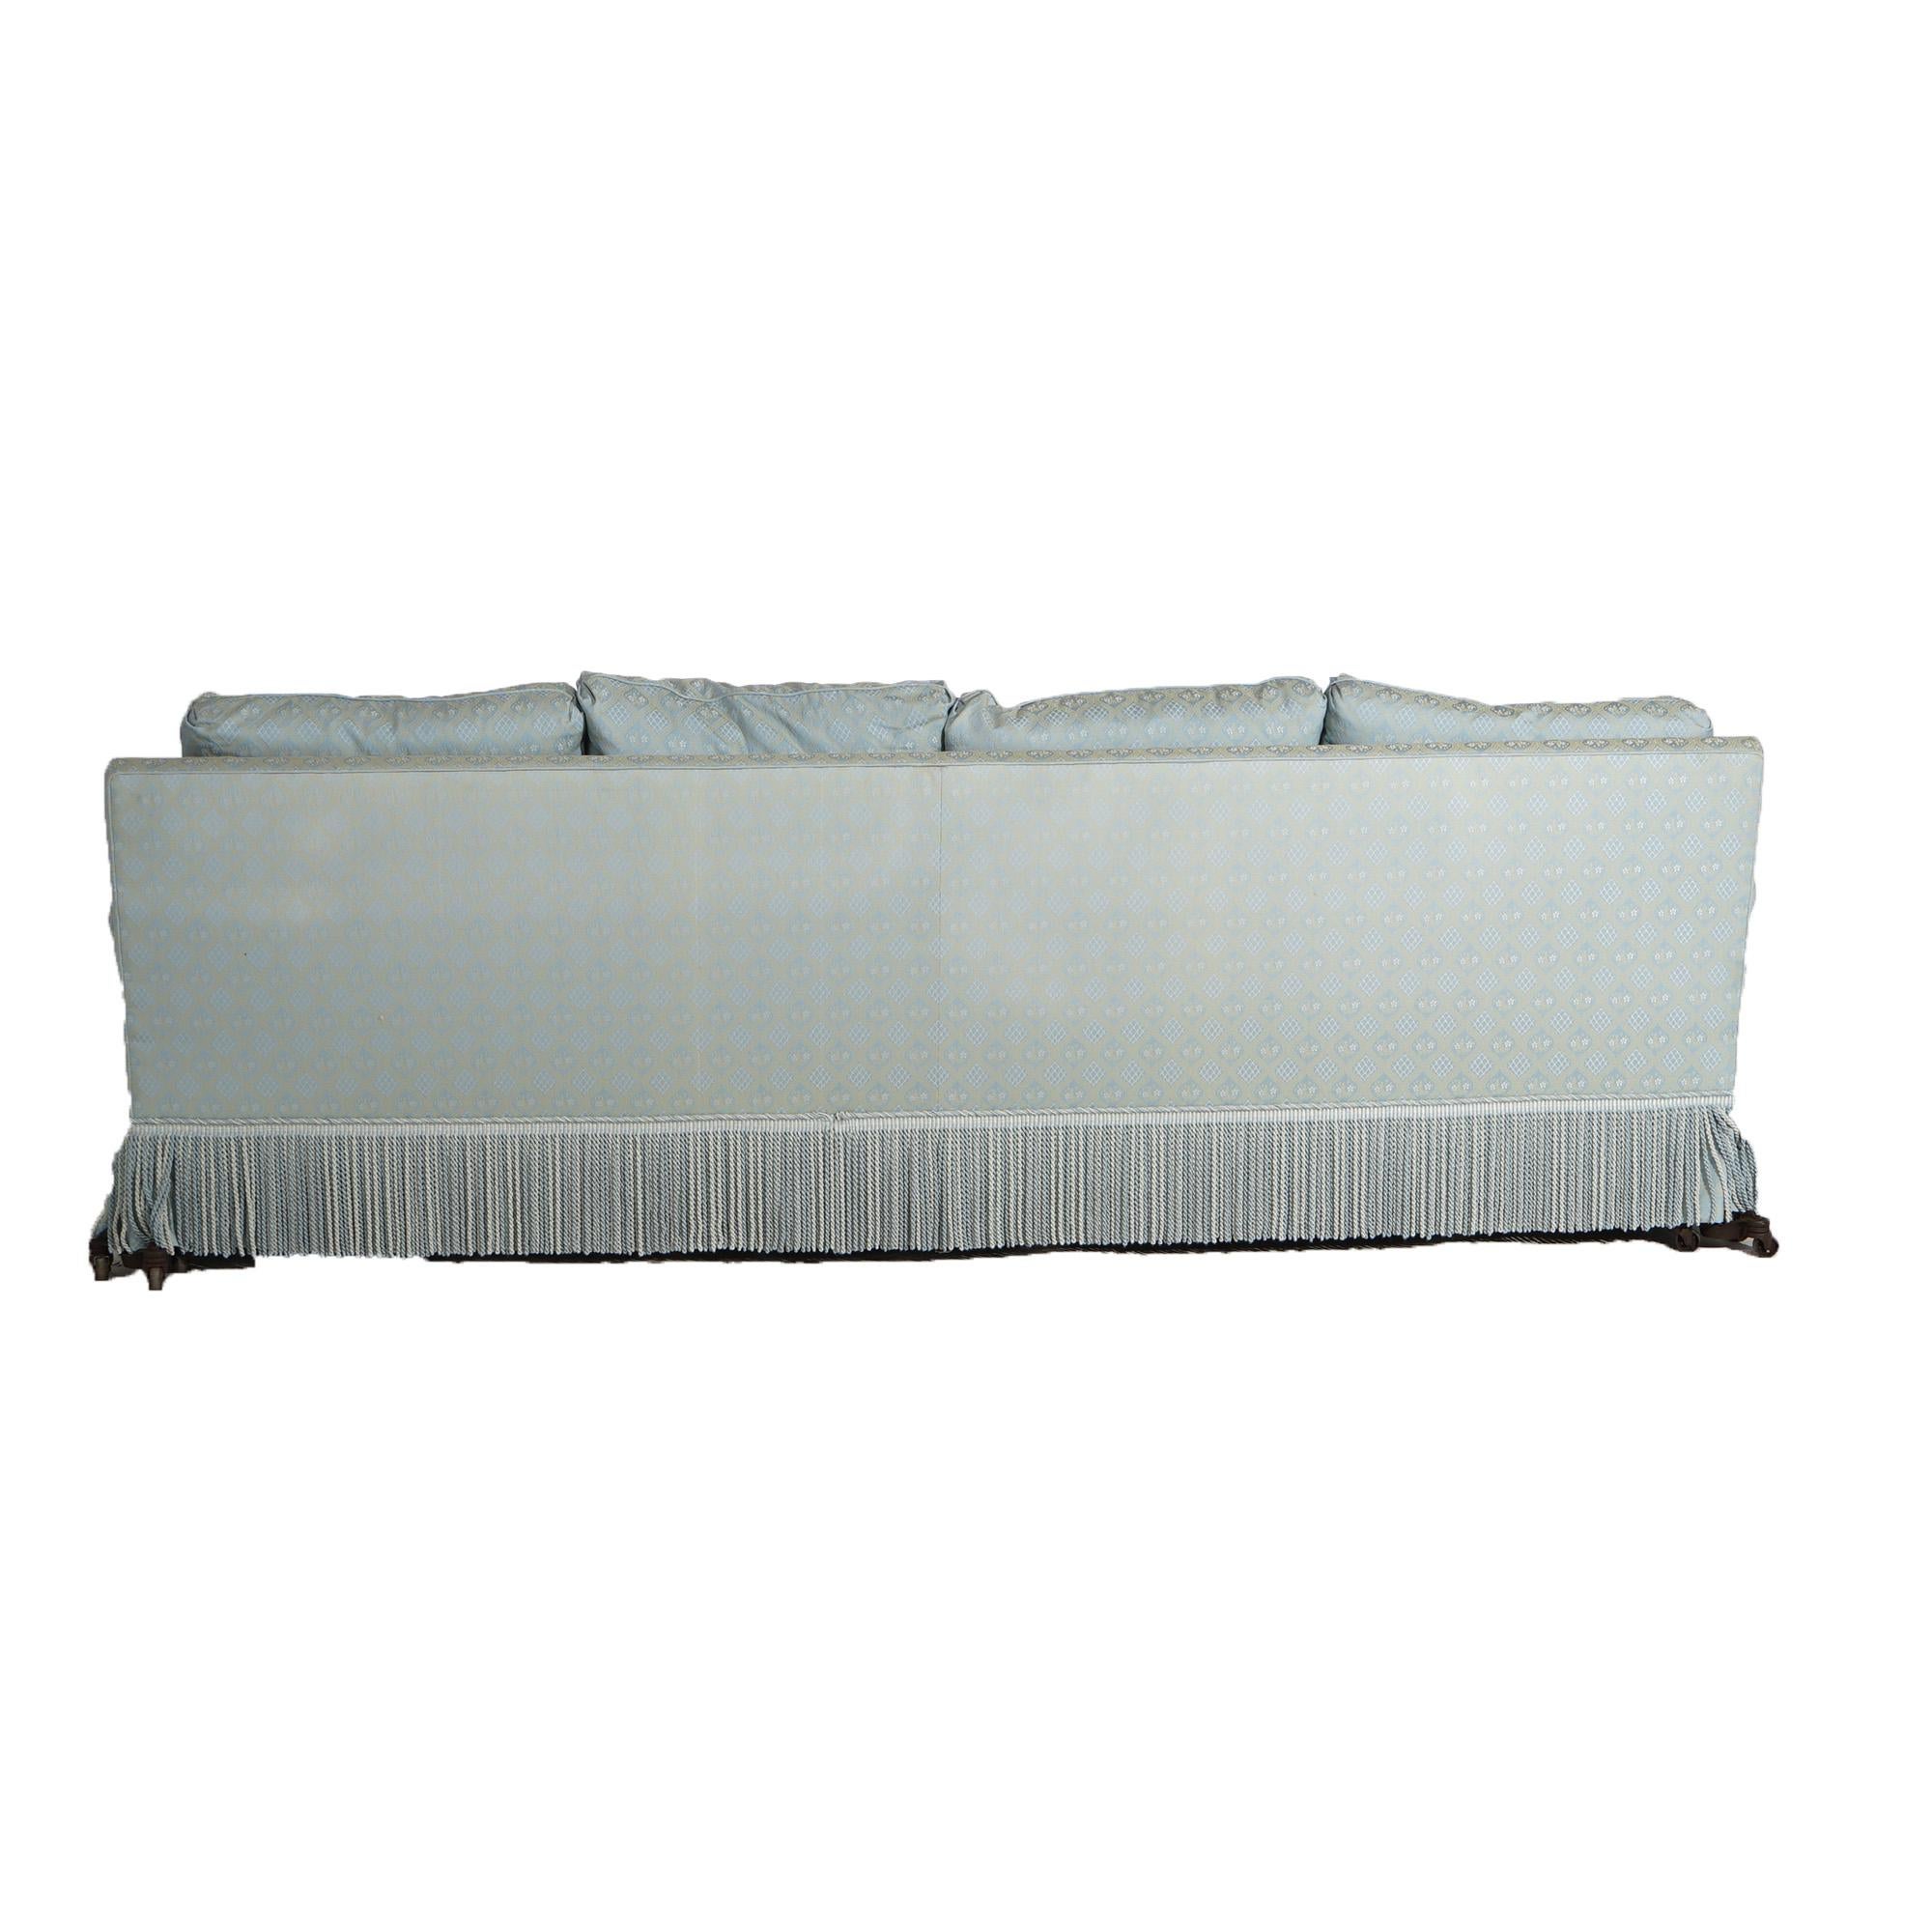 Upholstery Hollywood Regency Upholstered Pillow Back Long Sofa with Fringe Skirt 20thC For Sale